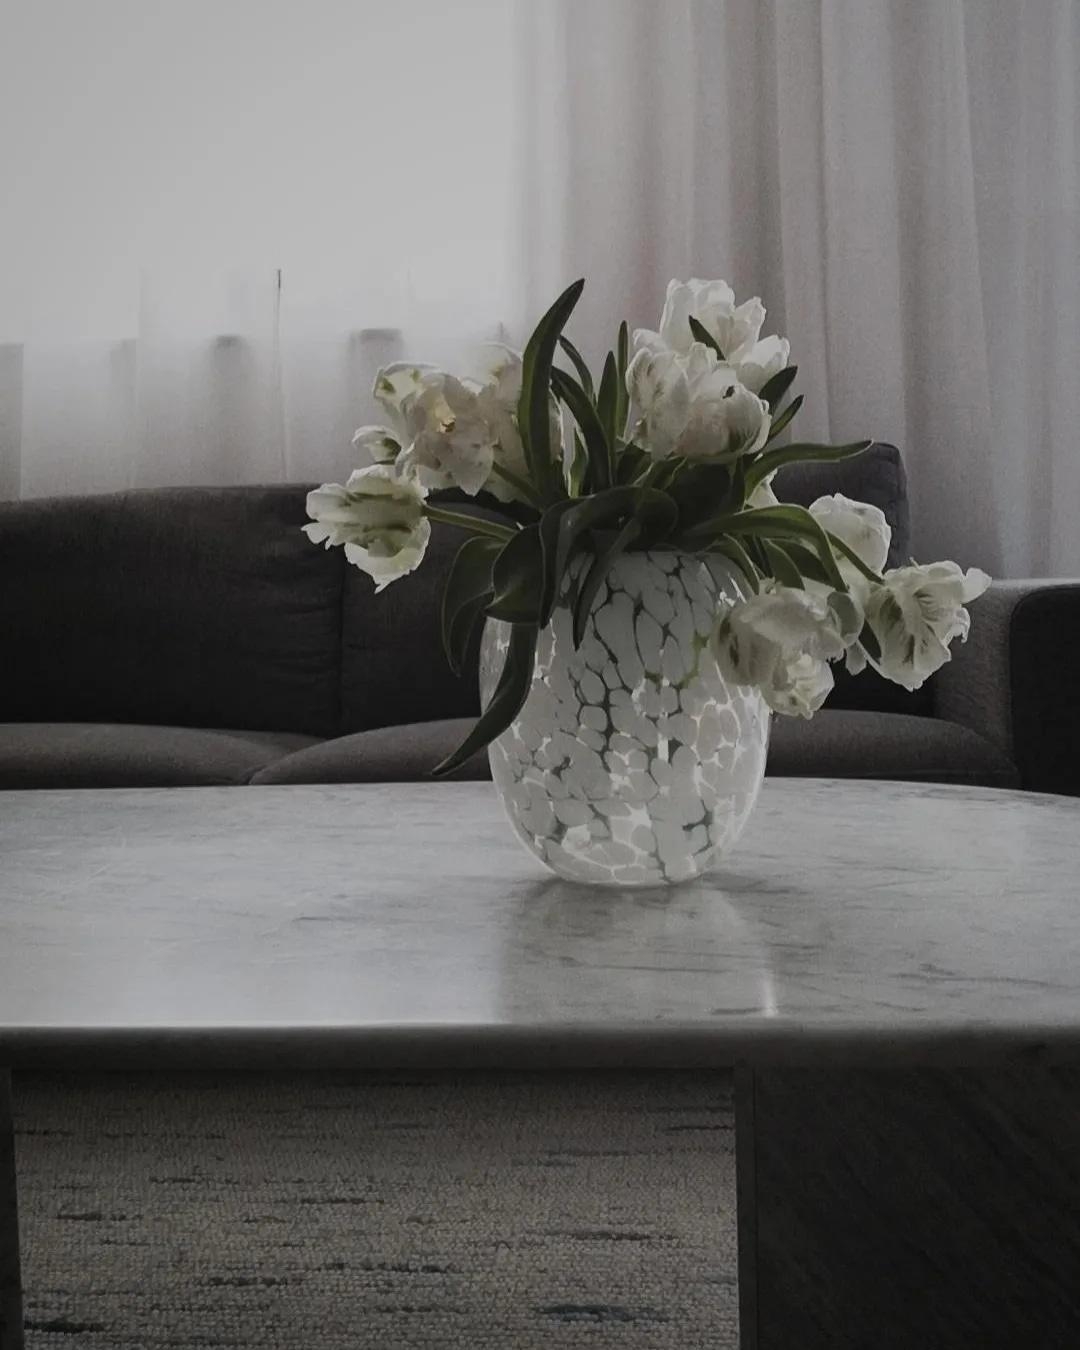 #wohnzimmer #livingroom #marmor #flowers #frischeblumen #